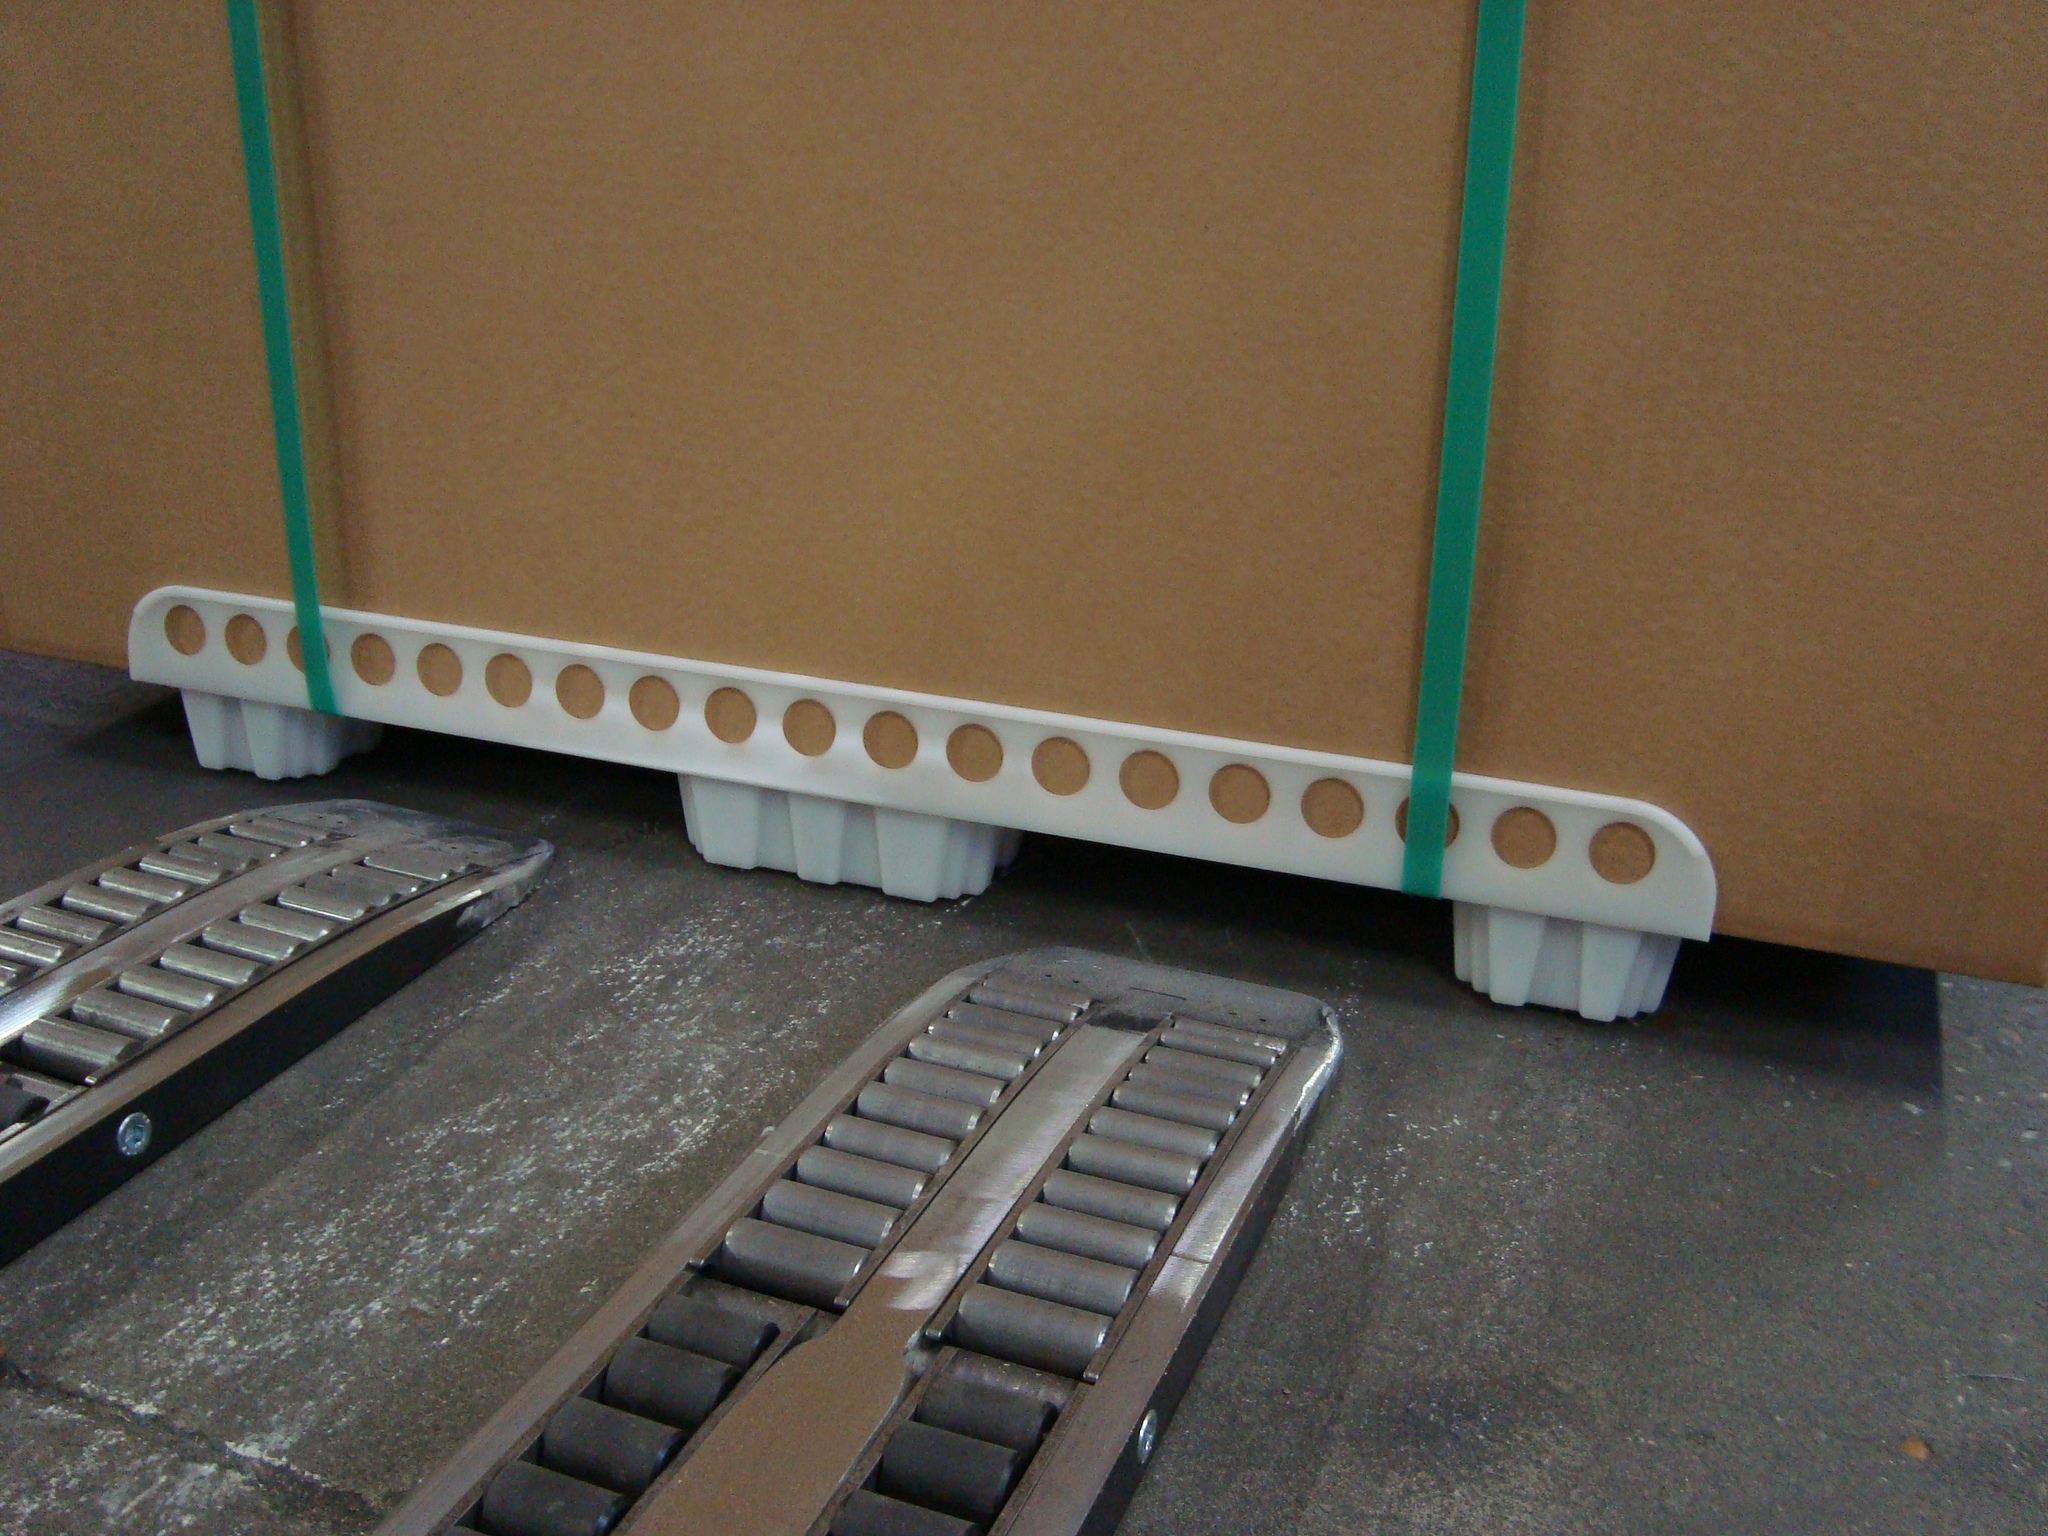 Forklift palletless handling attachment, RollerForks for handling IKEA pallets like optiledge and corrugated pallets.